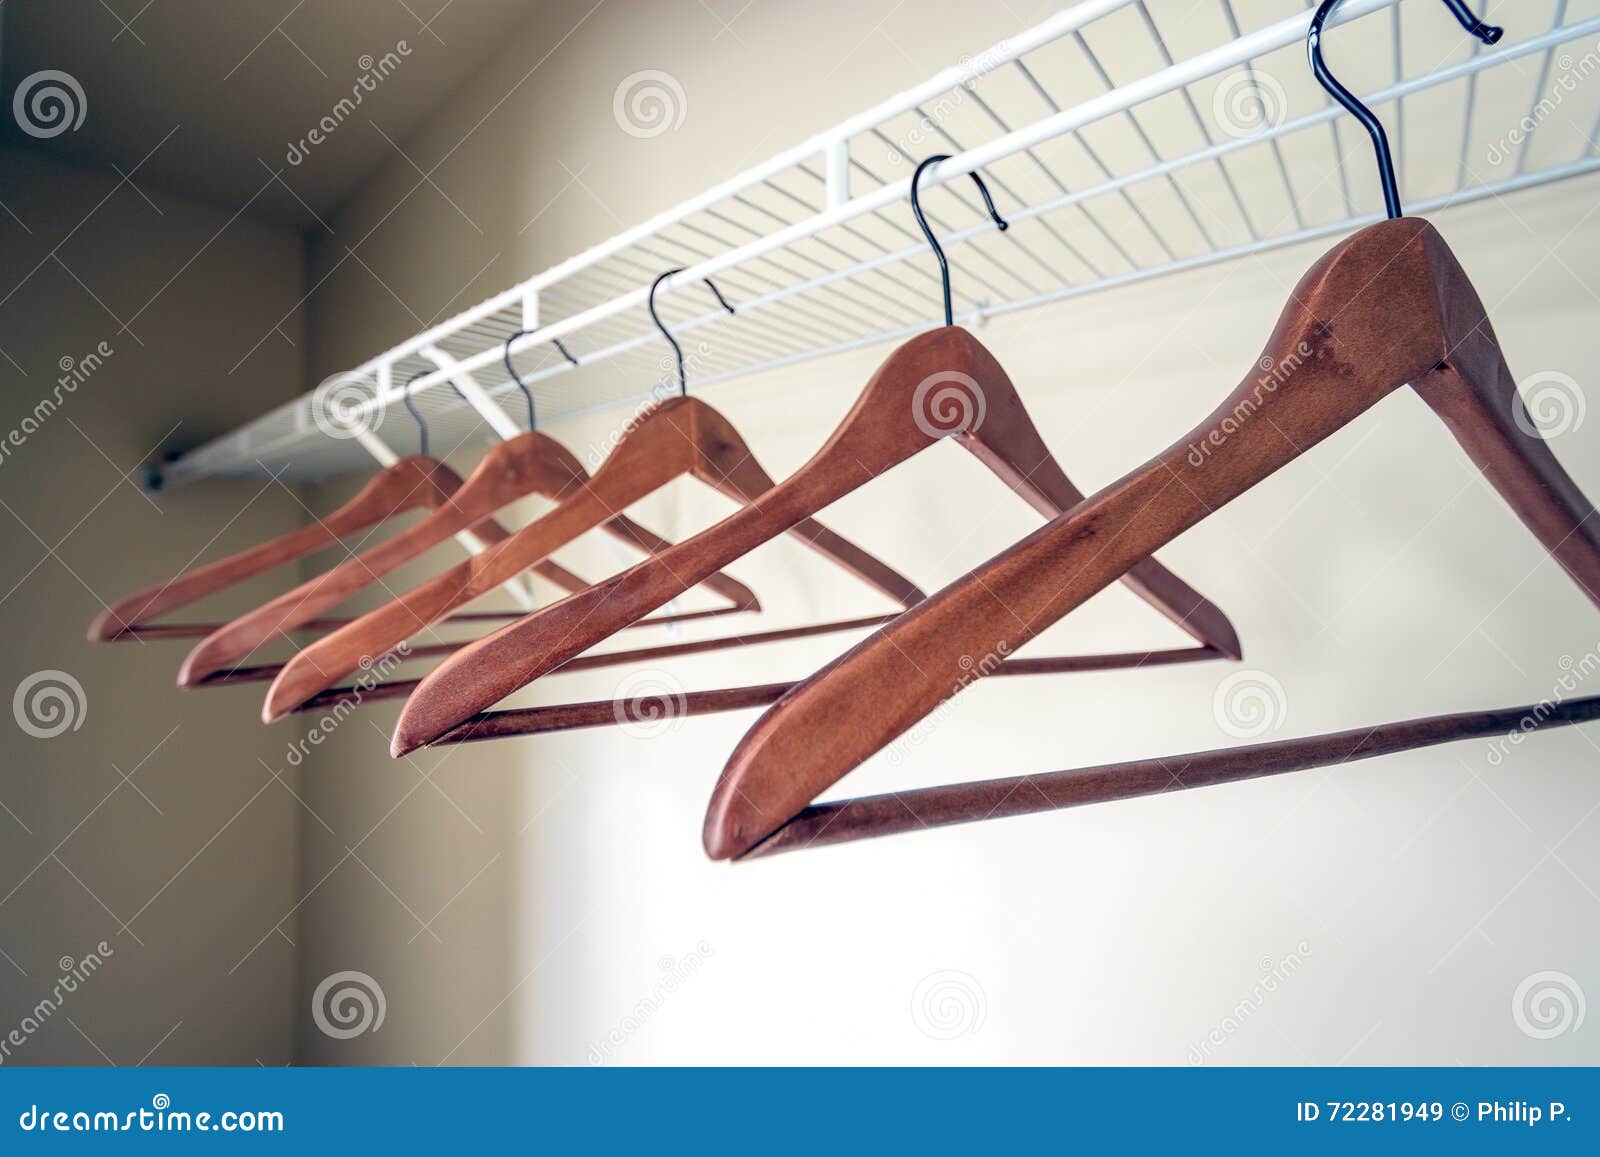 coat hangers in an empty closet.